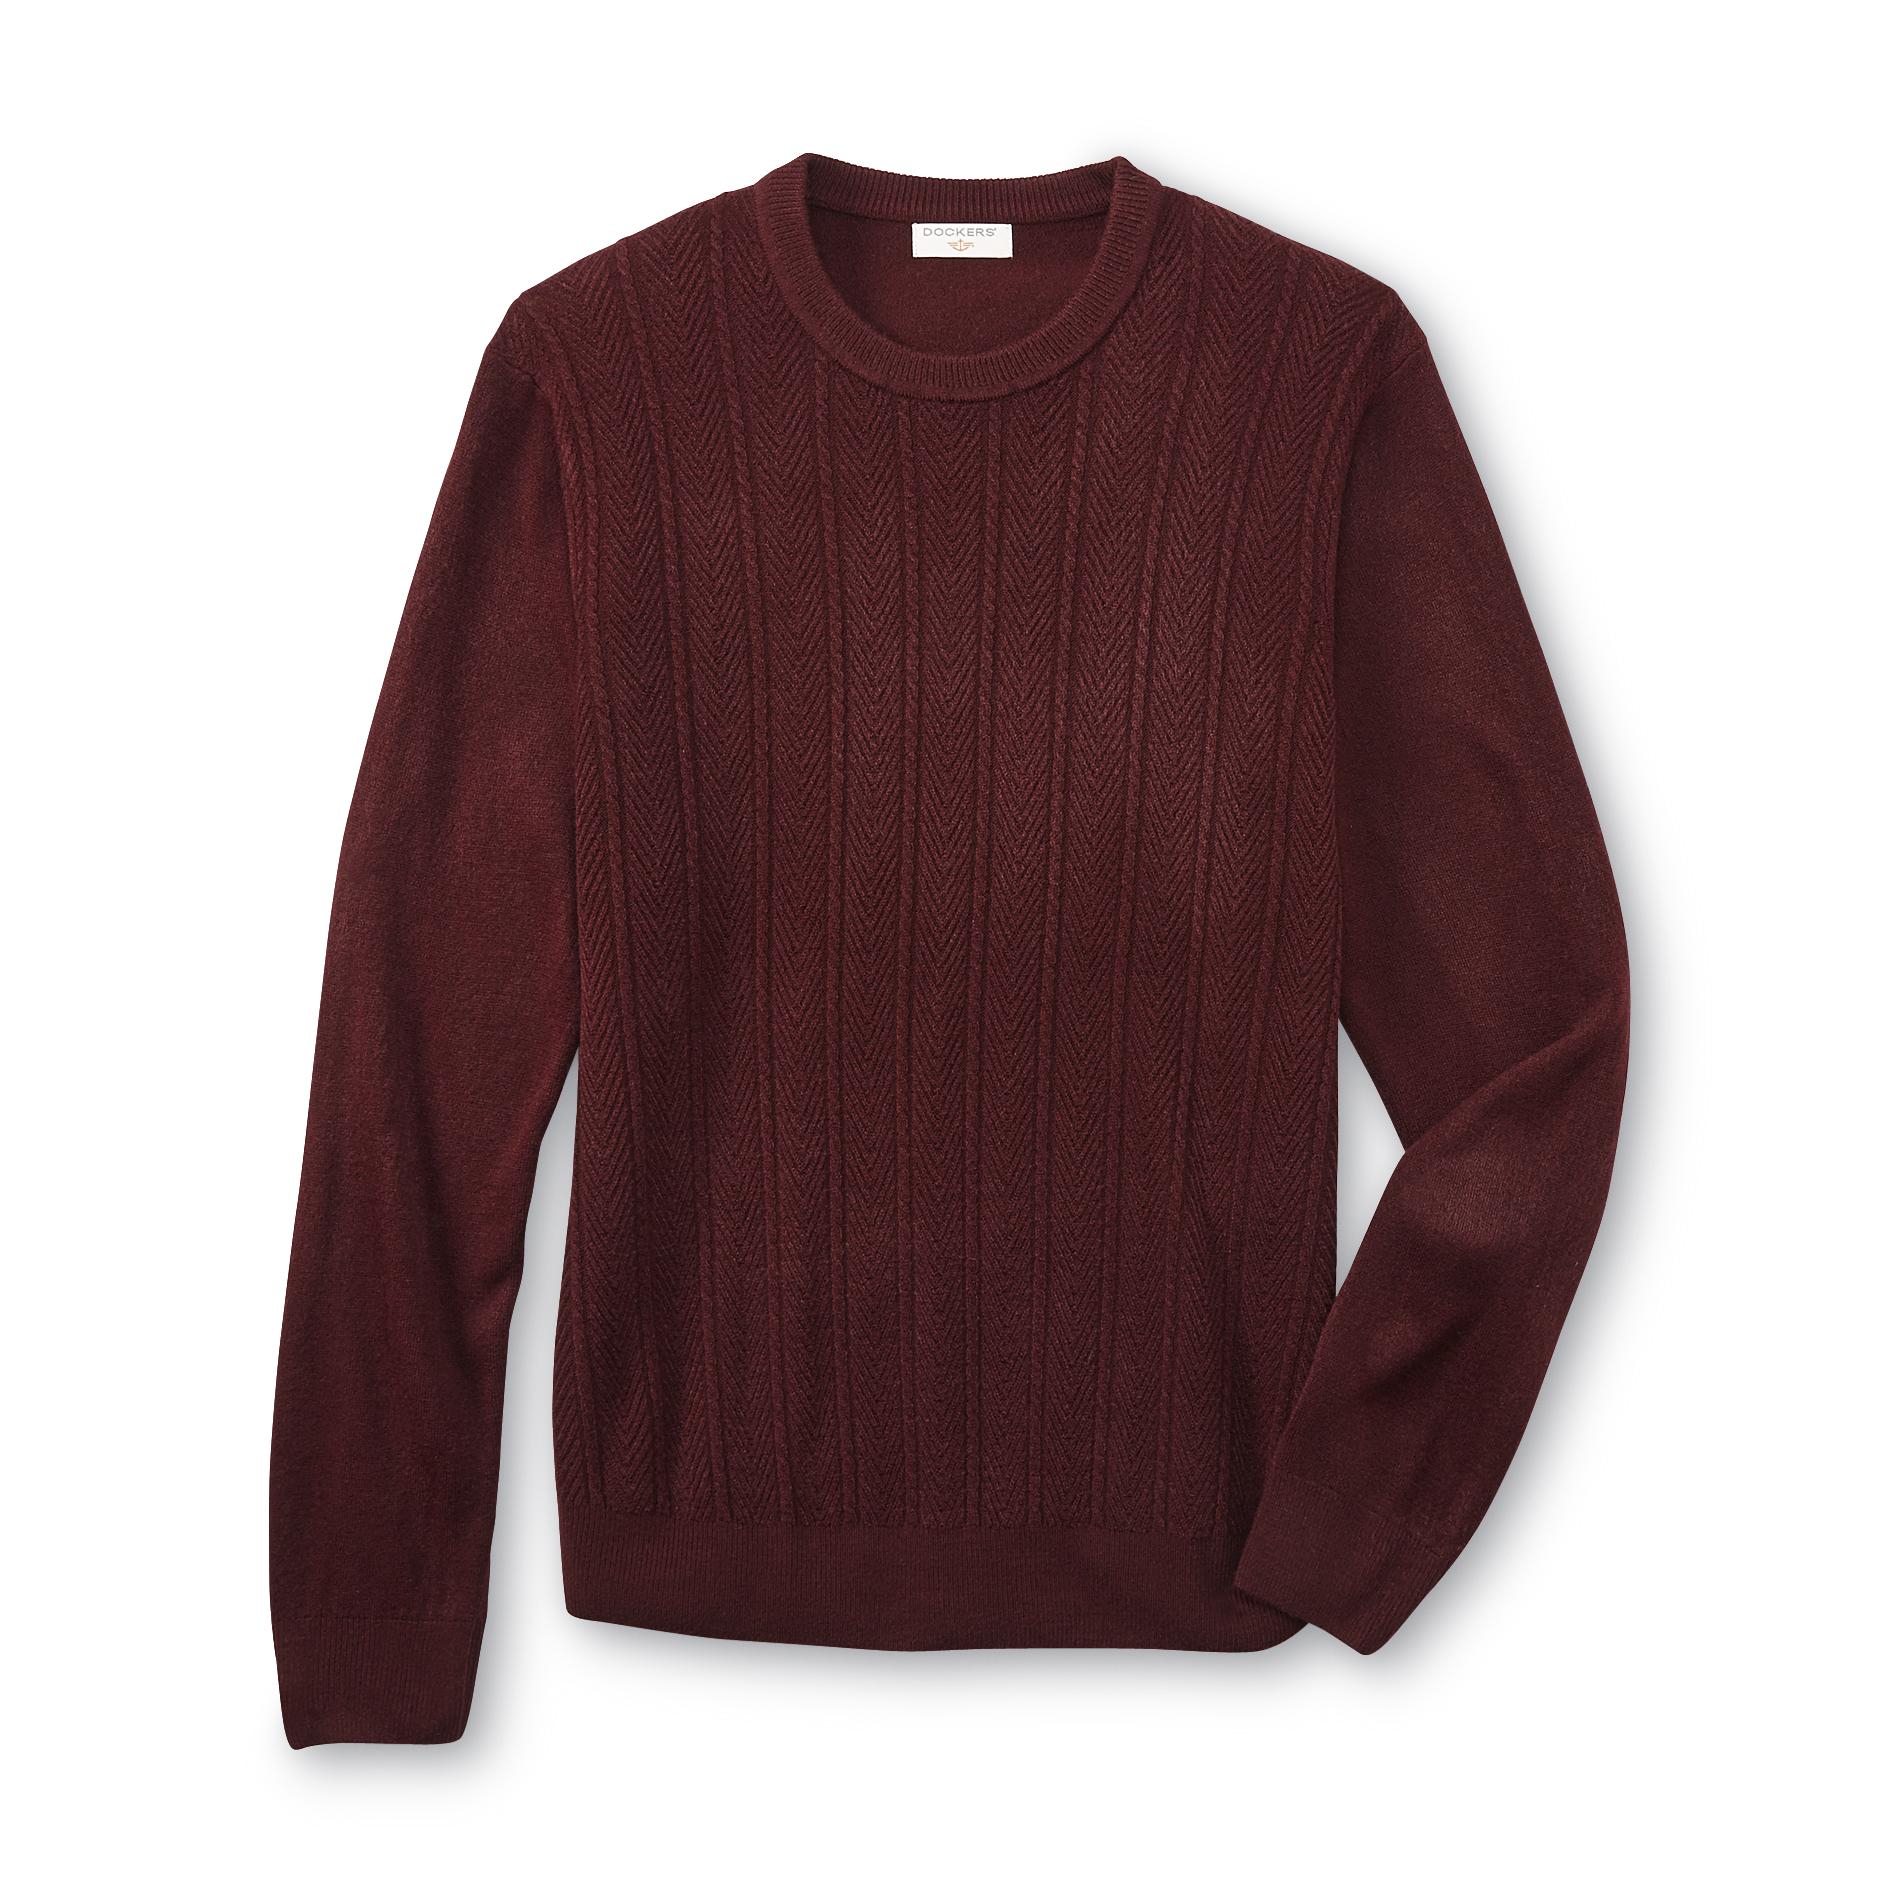 Dockers Men's Textured Pullover Sweater